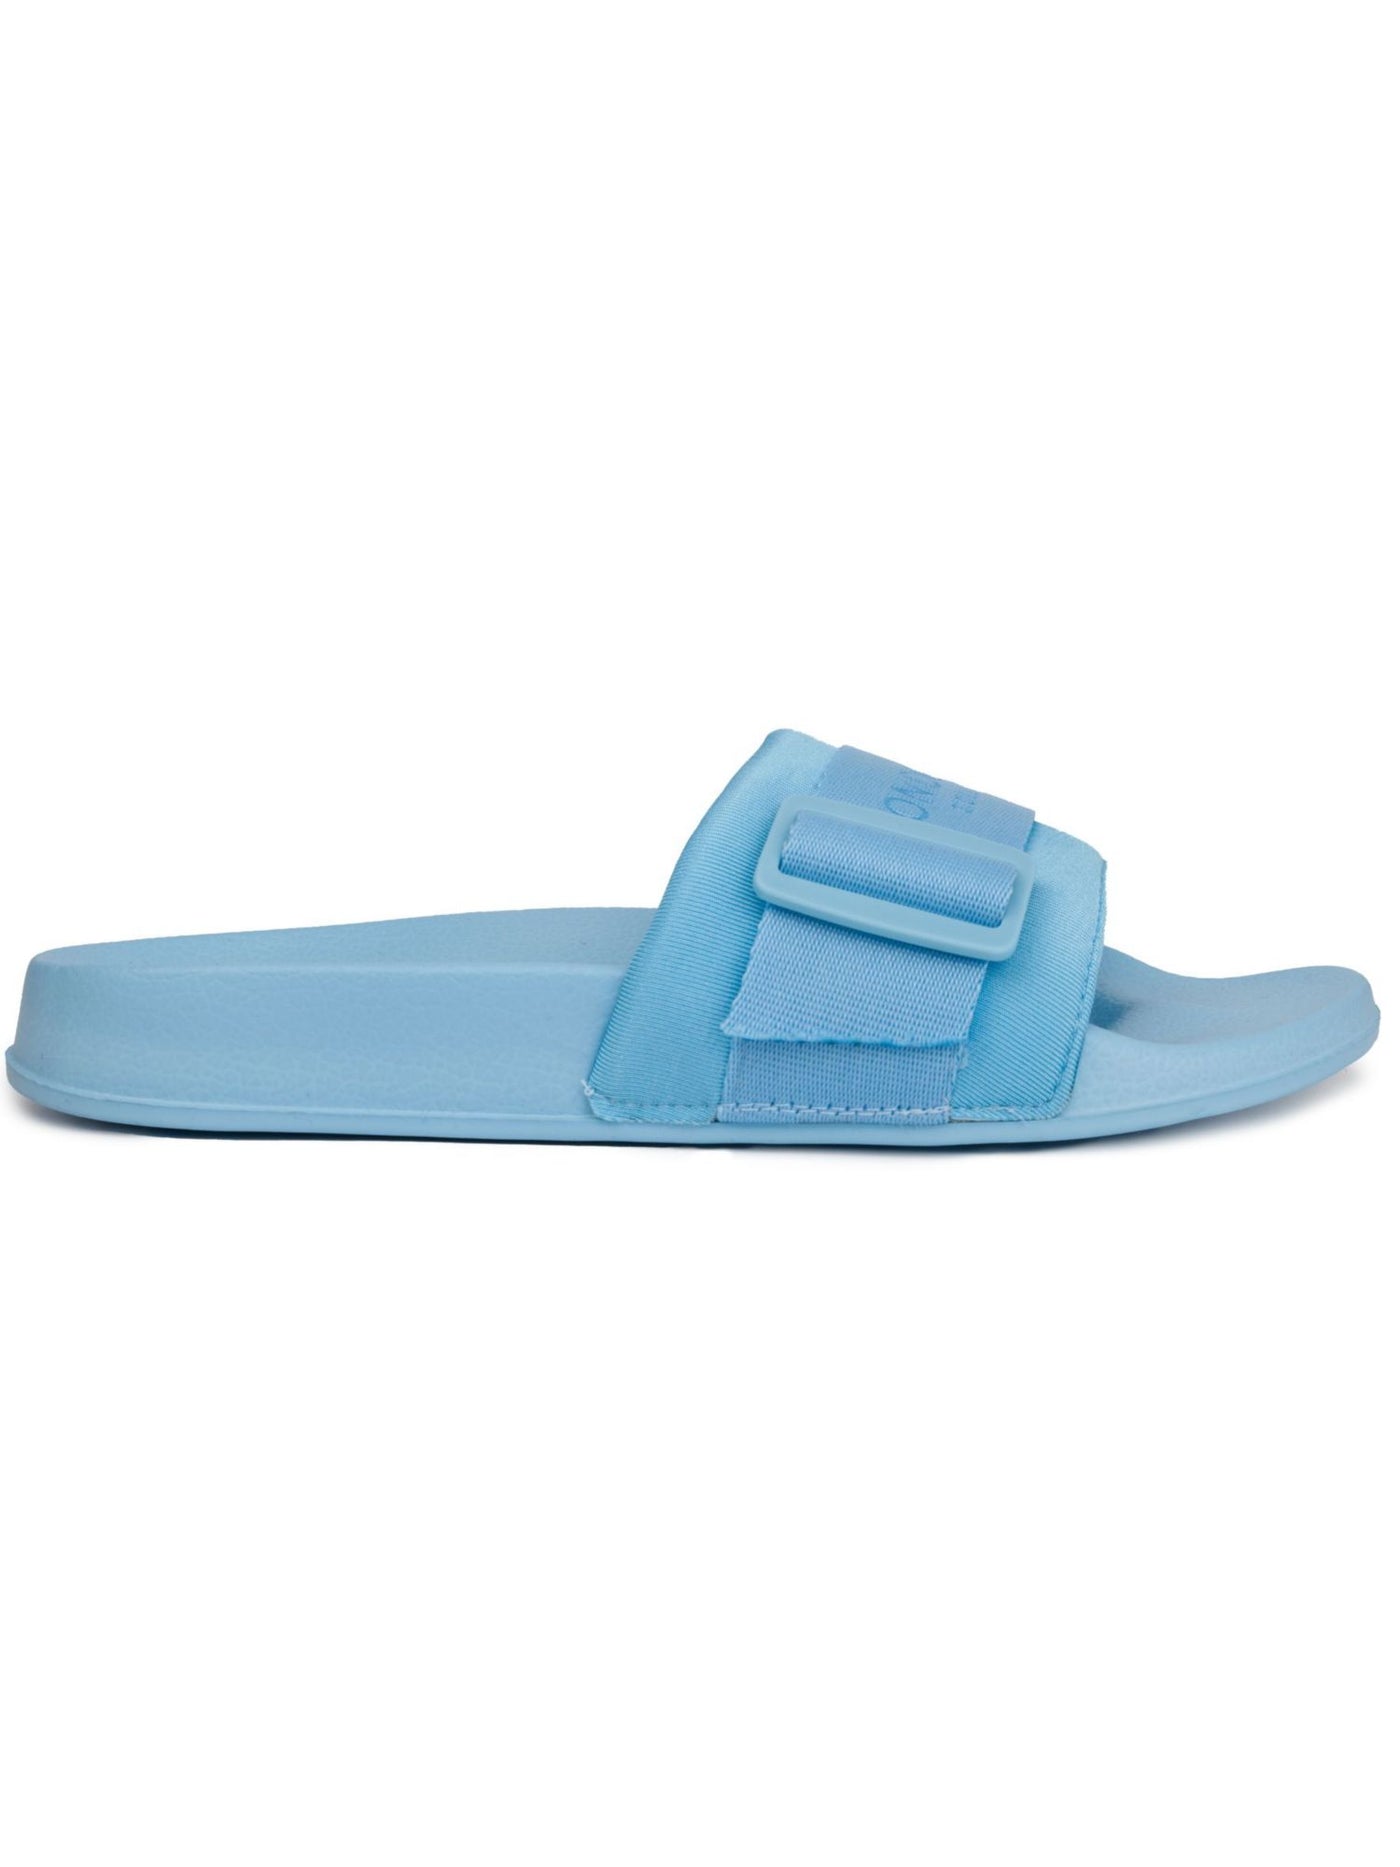 LONDON FOG Womens Light Blue Buckle Accent Logo Skyden Round Toe Platform Slip On Slide Sandals Shoes 7 M